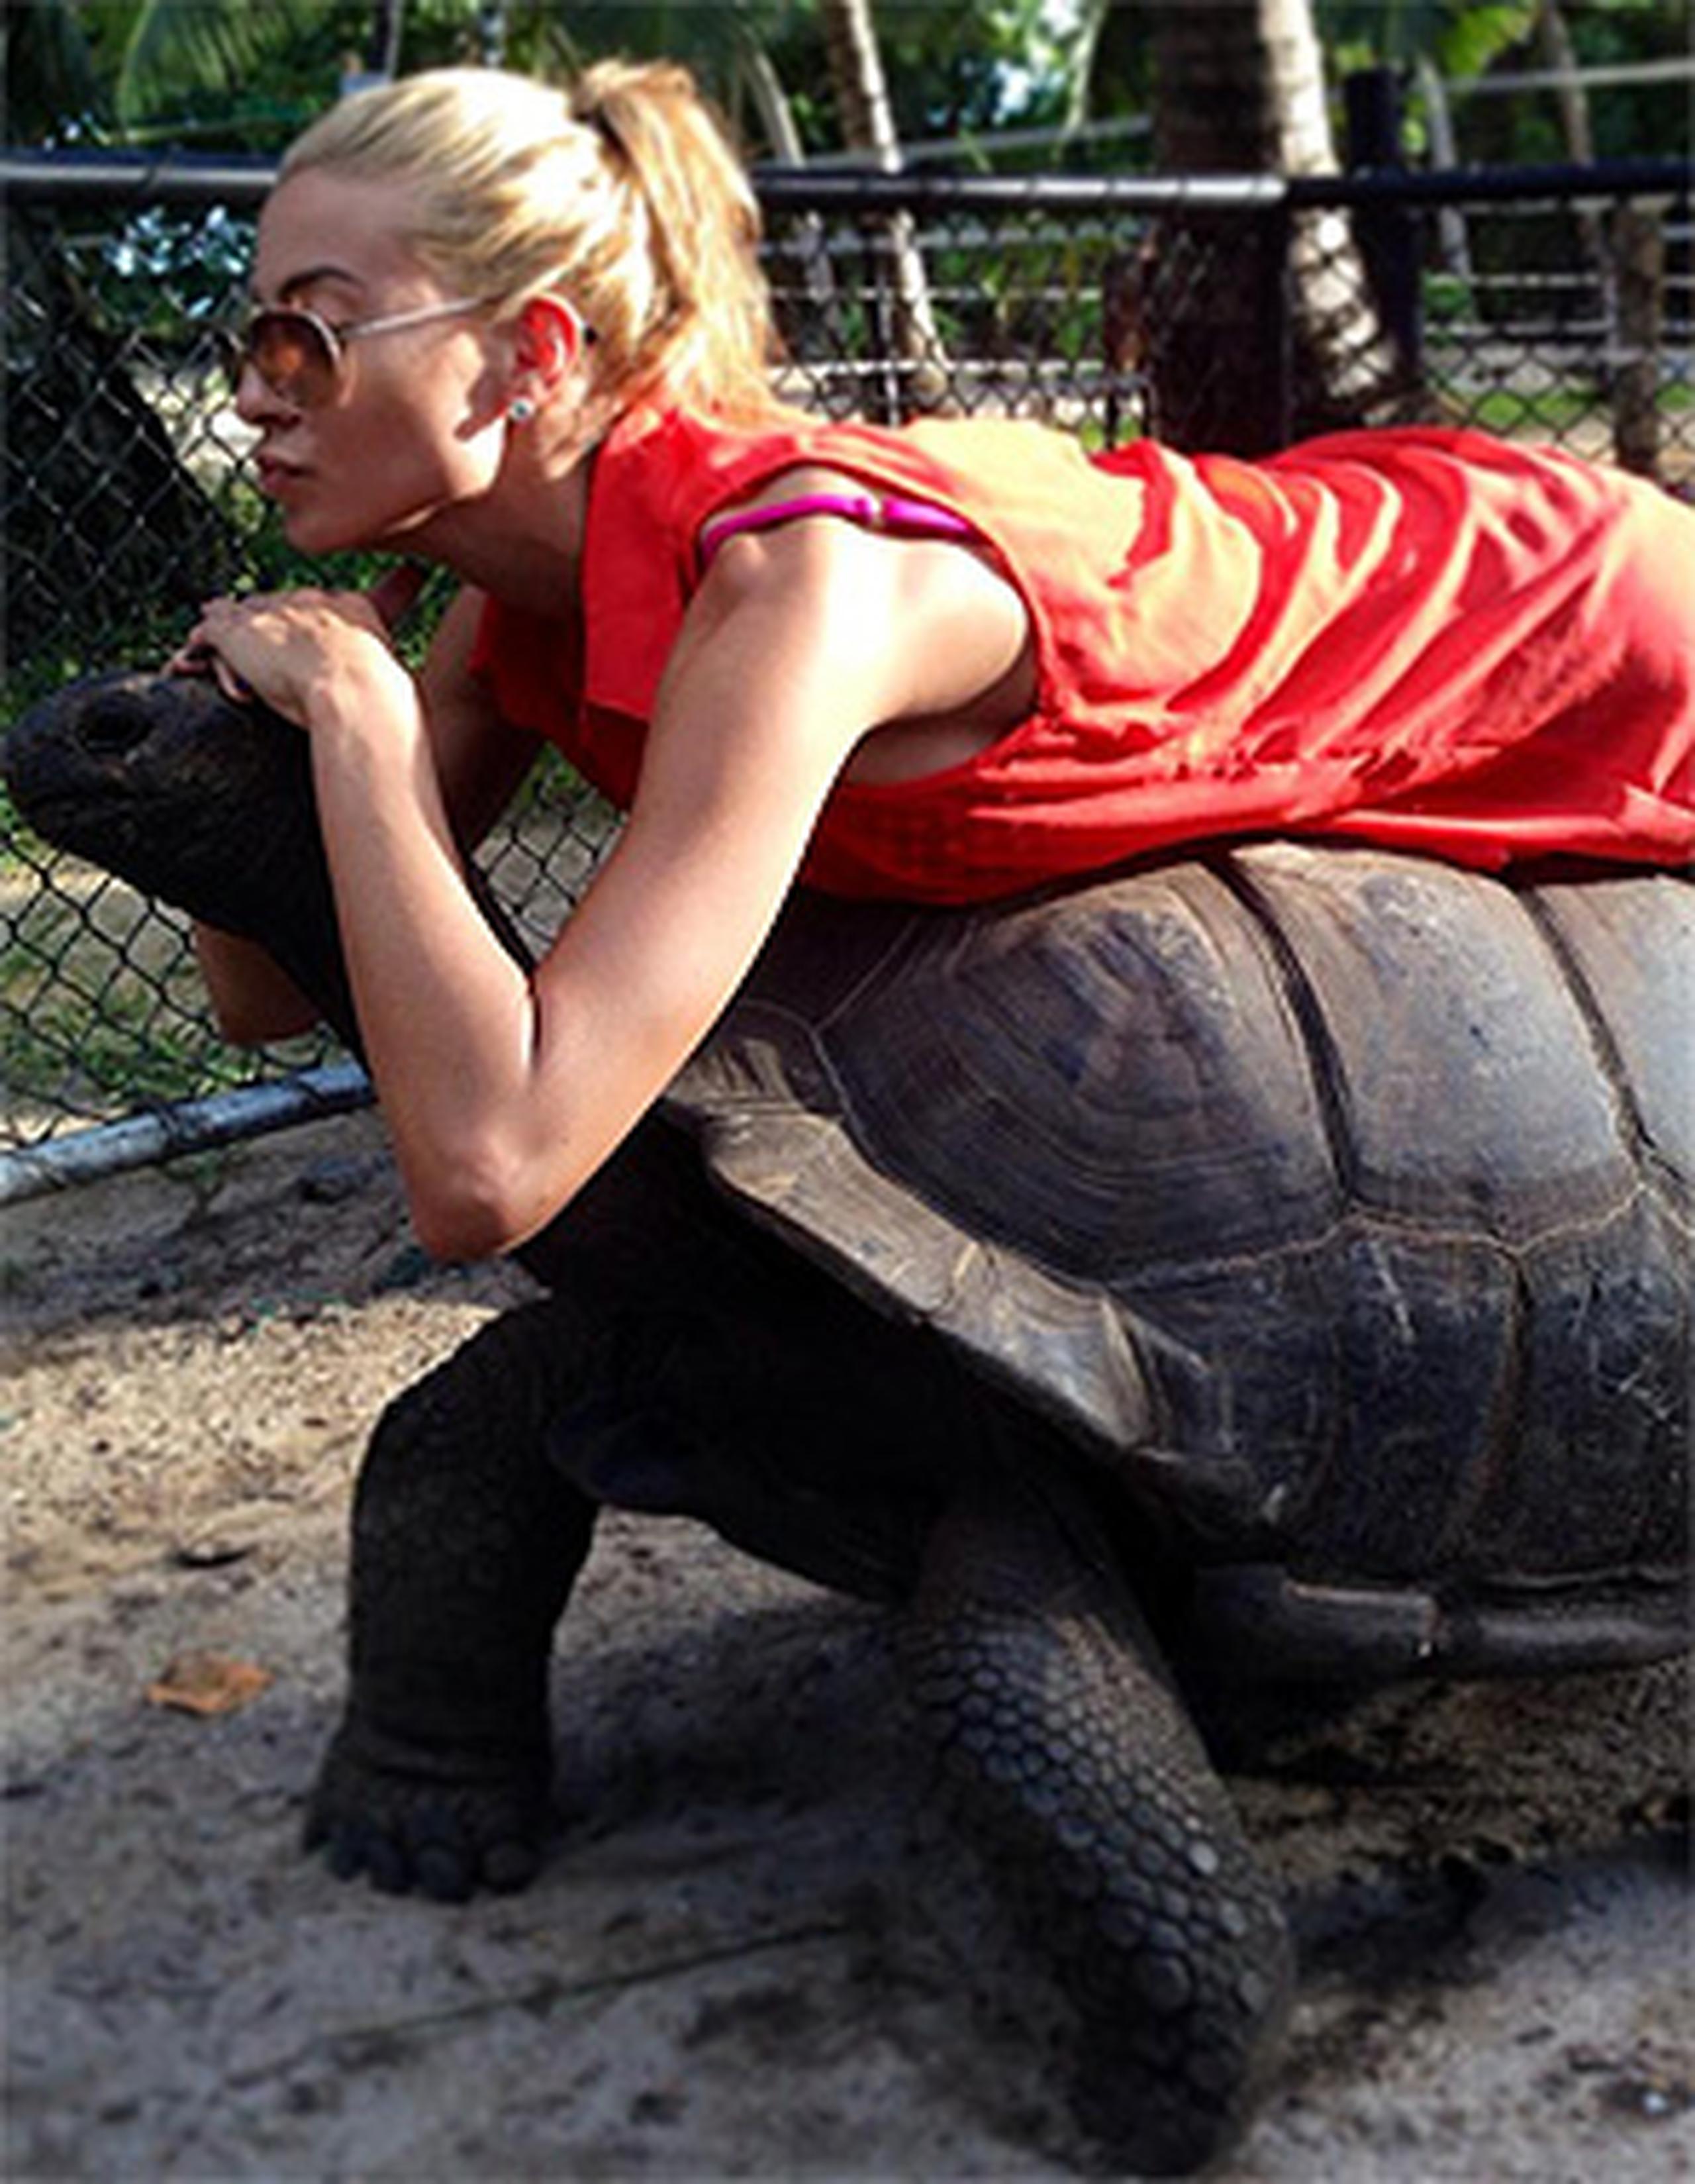 La finalista de Nuestra belleza latina 2011 disfrutó la aventura de montar una tortuga y expresó que no sintió en Dubái el temblor que afectó zonas de Irán y Paquistán. (Suminsitrada)